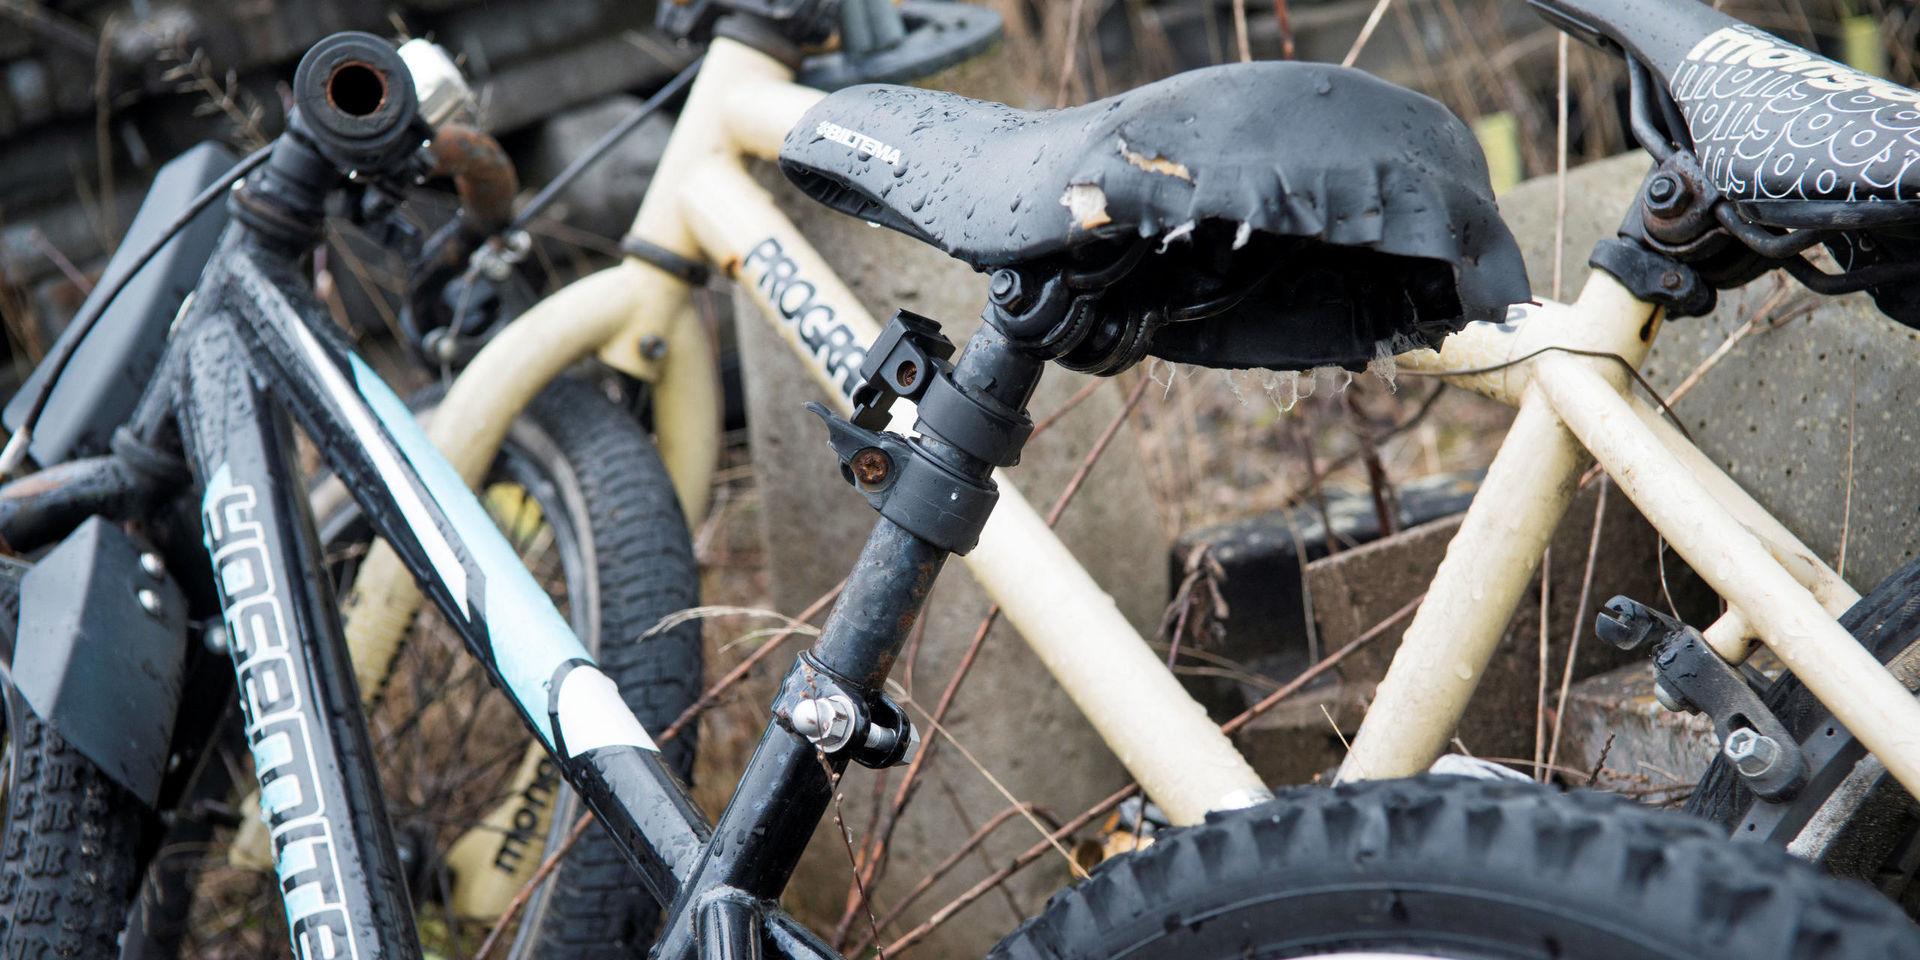 Med lite luft i däcken går åtskilliga av cyklarna som omhändertagits att cykla på. 